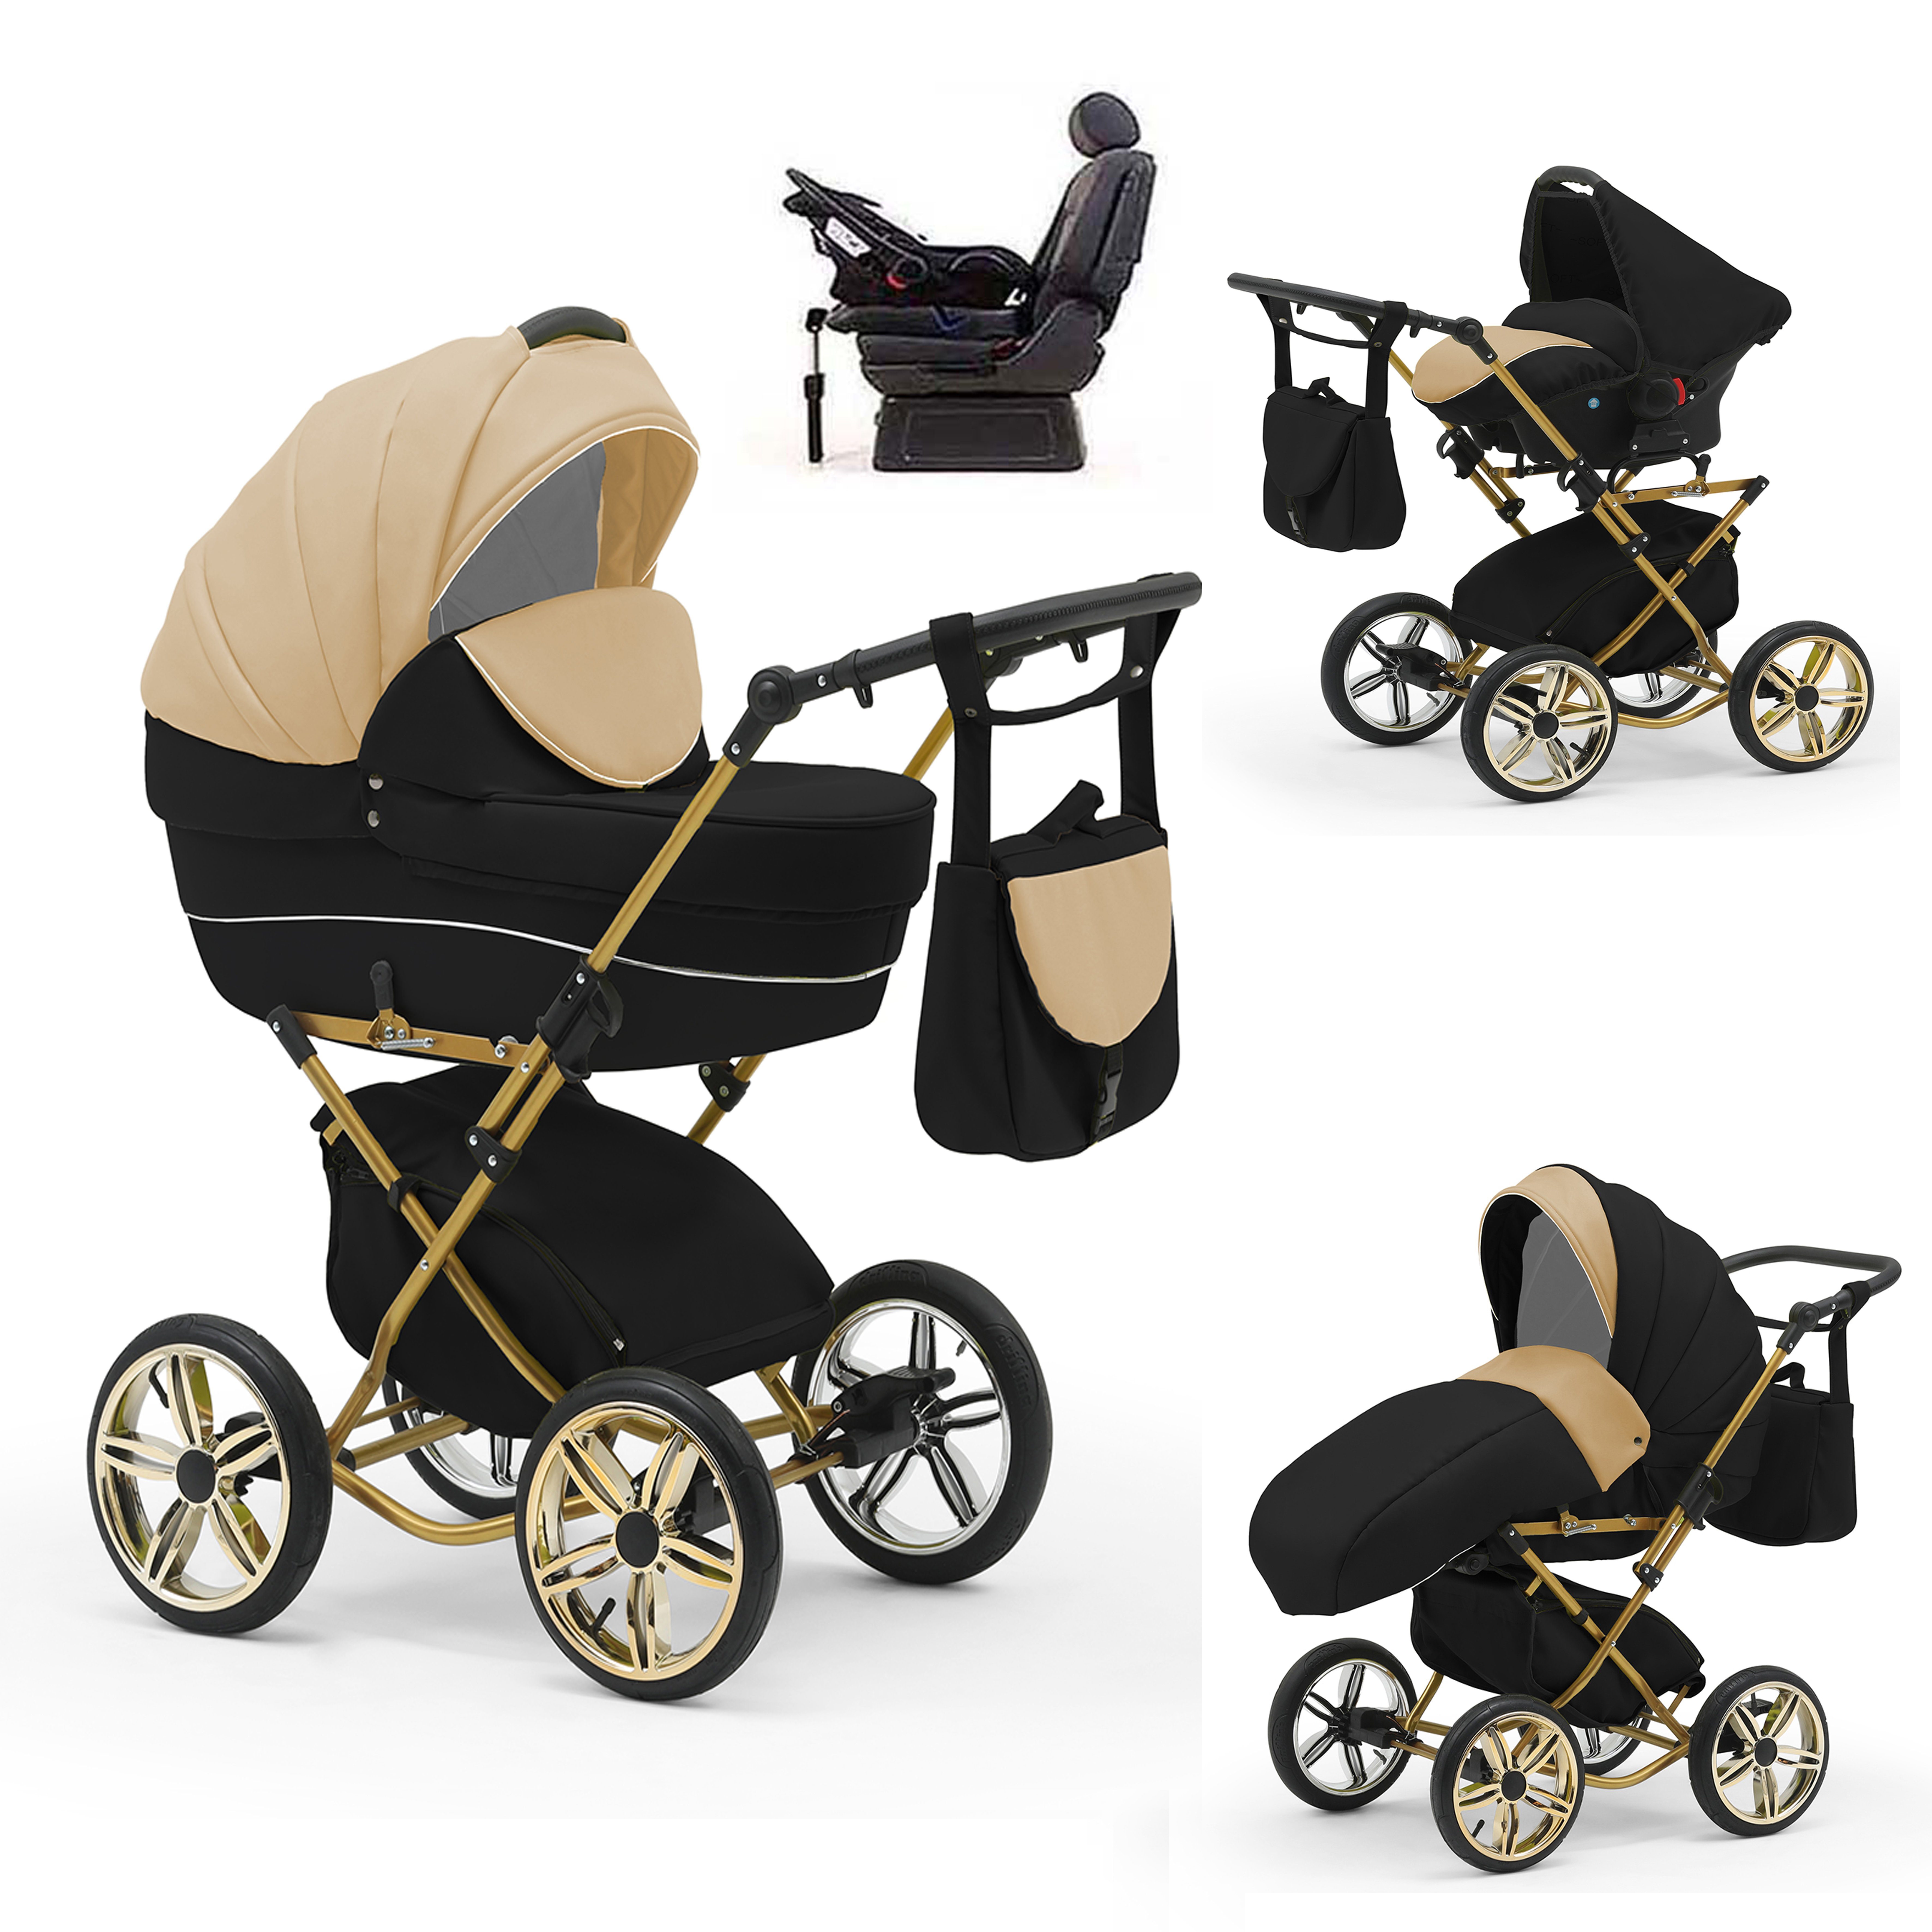 Teile inkl. - - Autositz 4 1 Sorento in Iso 10 Beige-Schwarz und Designs in babies-on-wheels Kombi-Kinderwagen Base 14